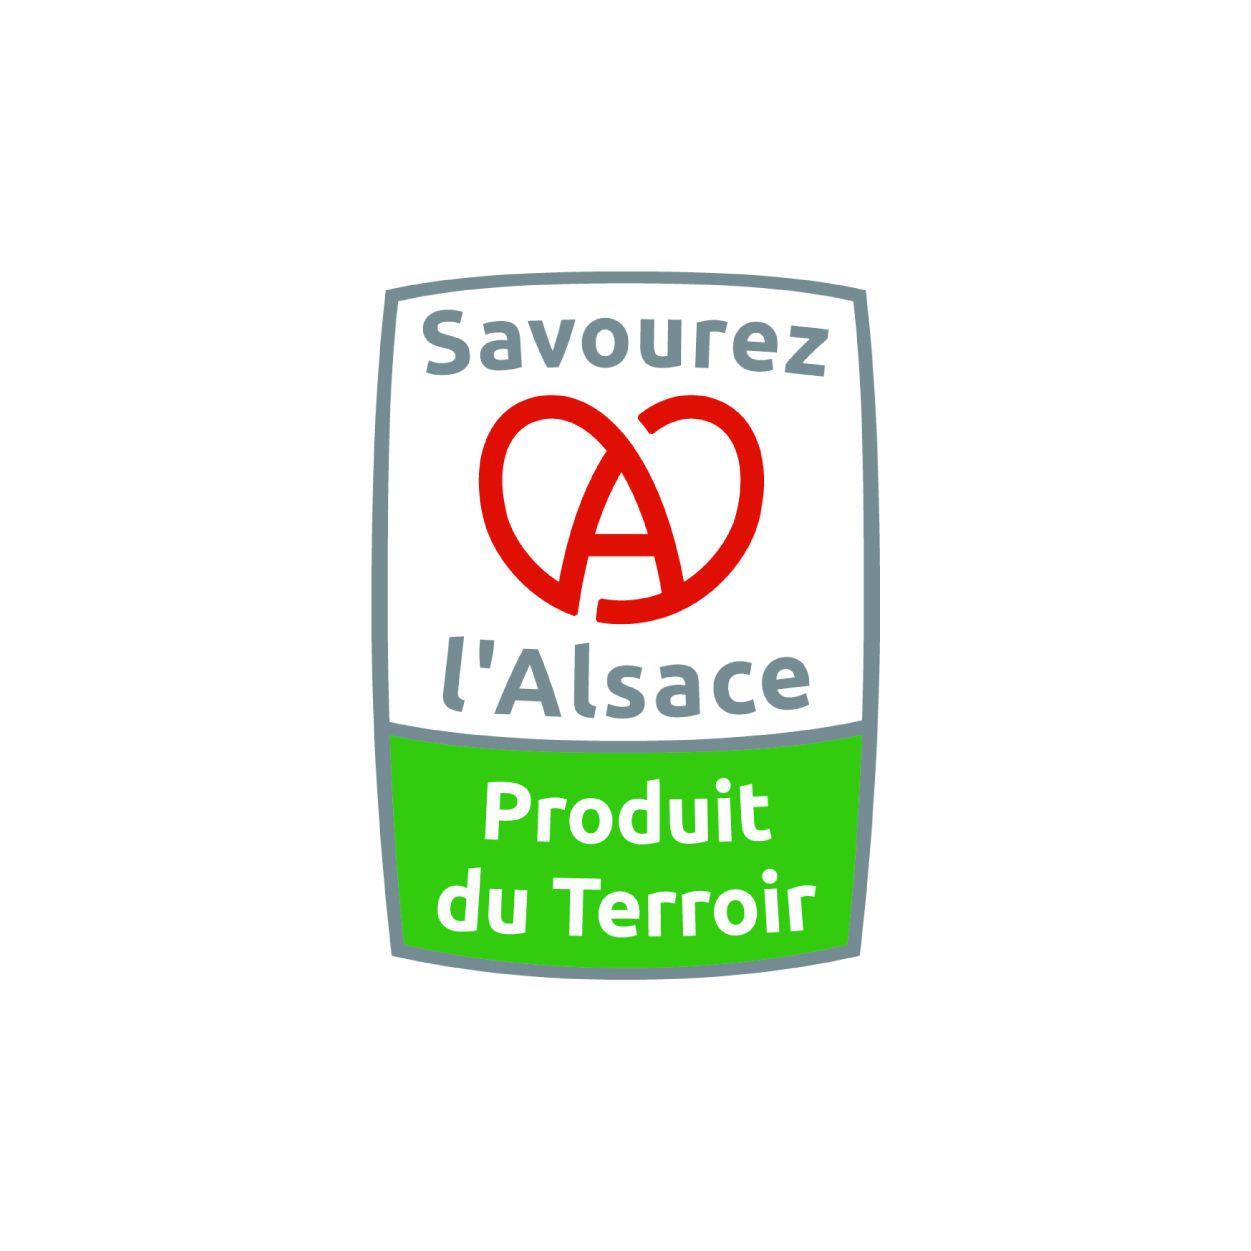 Savourez I'Alsace Produit du Terroir